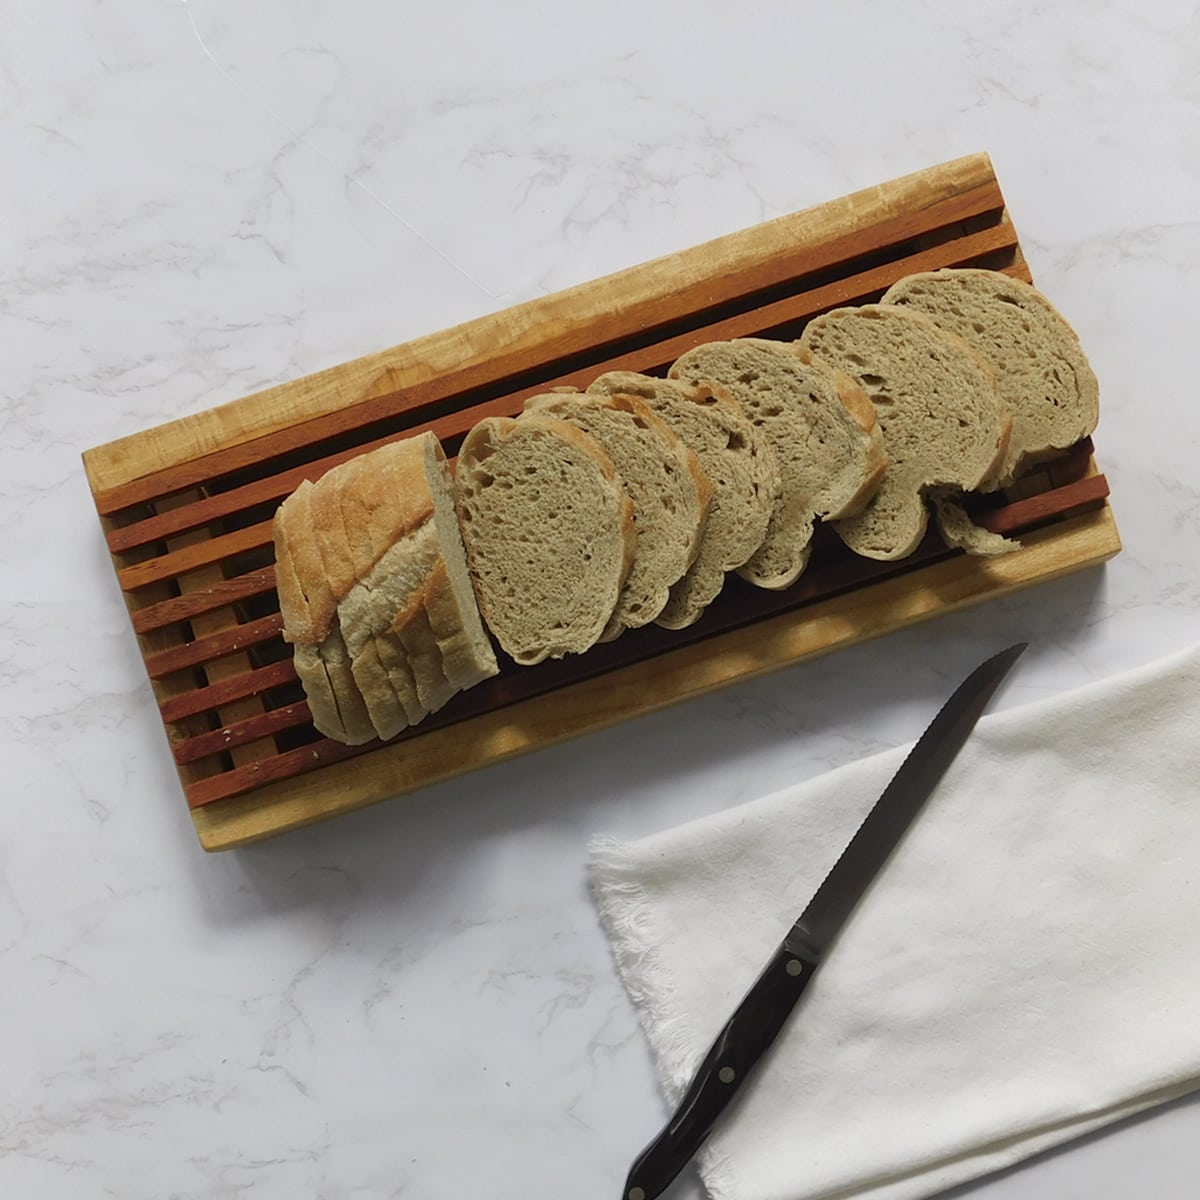 RoyalHouse Tabla de cortar pan de bambú natural de alta calidad con bandeja  para migas, bandeja para servir pan para cocina